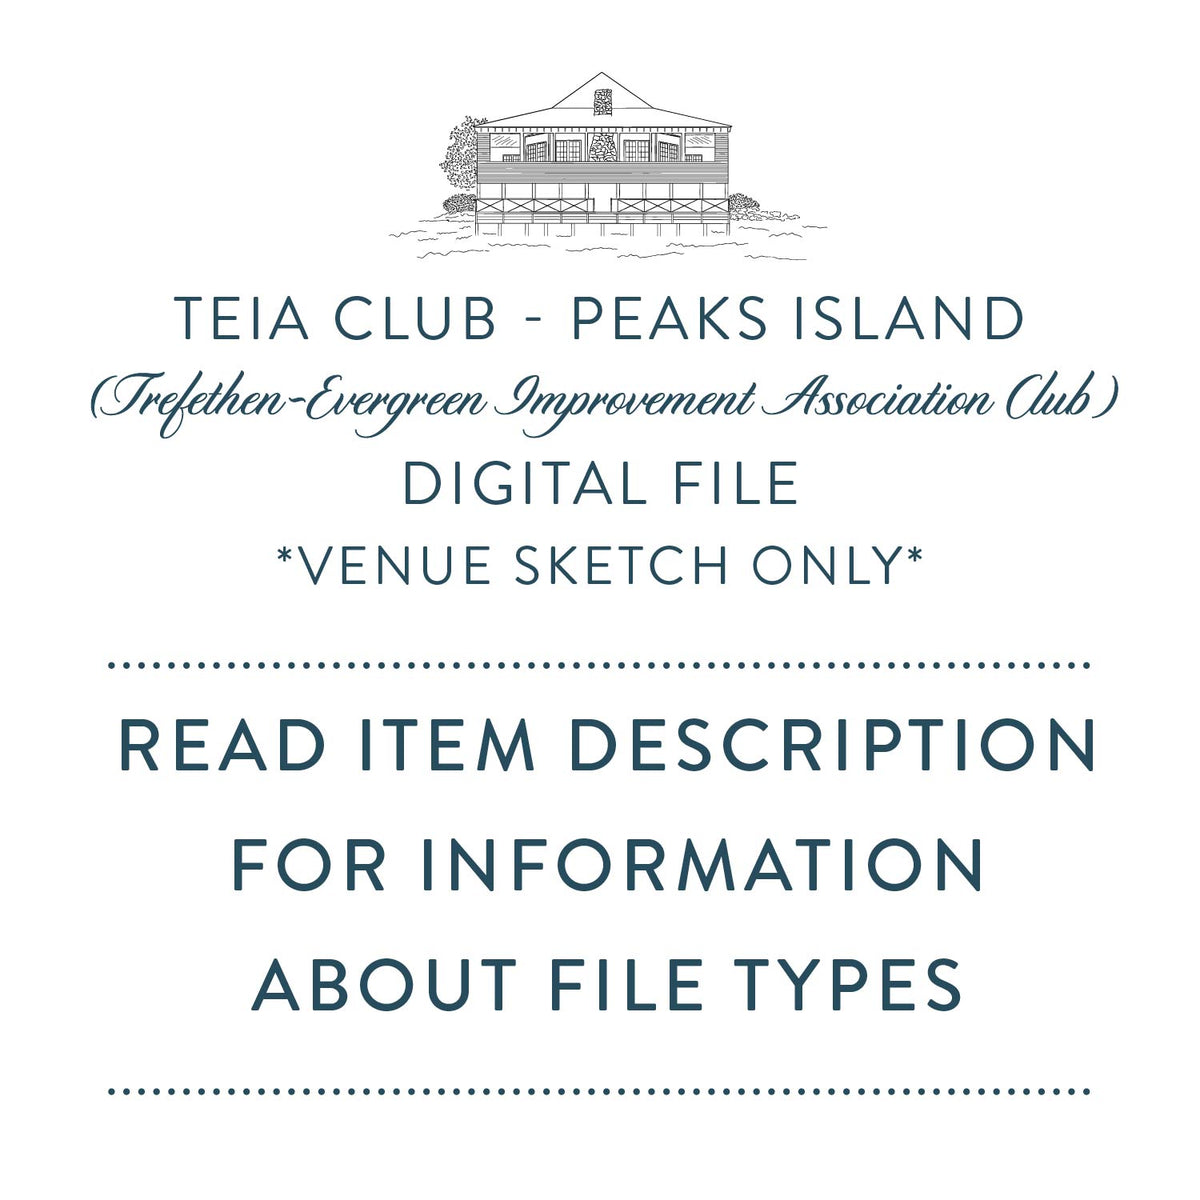 TEIA Club Peaks Island Digital File